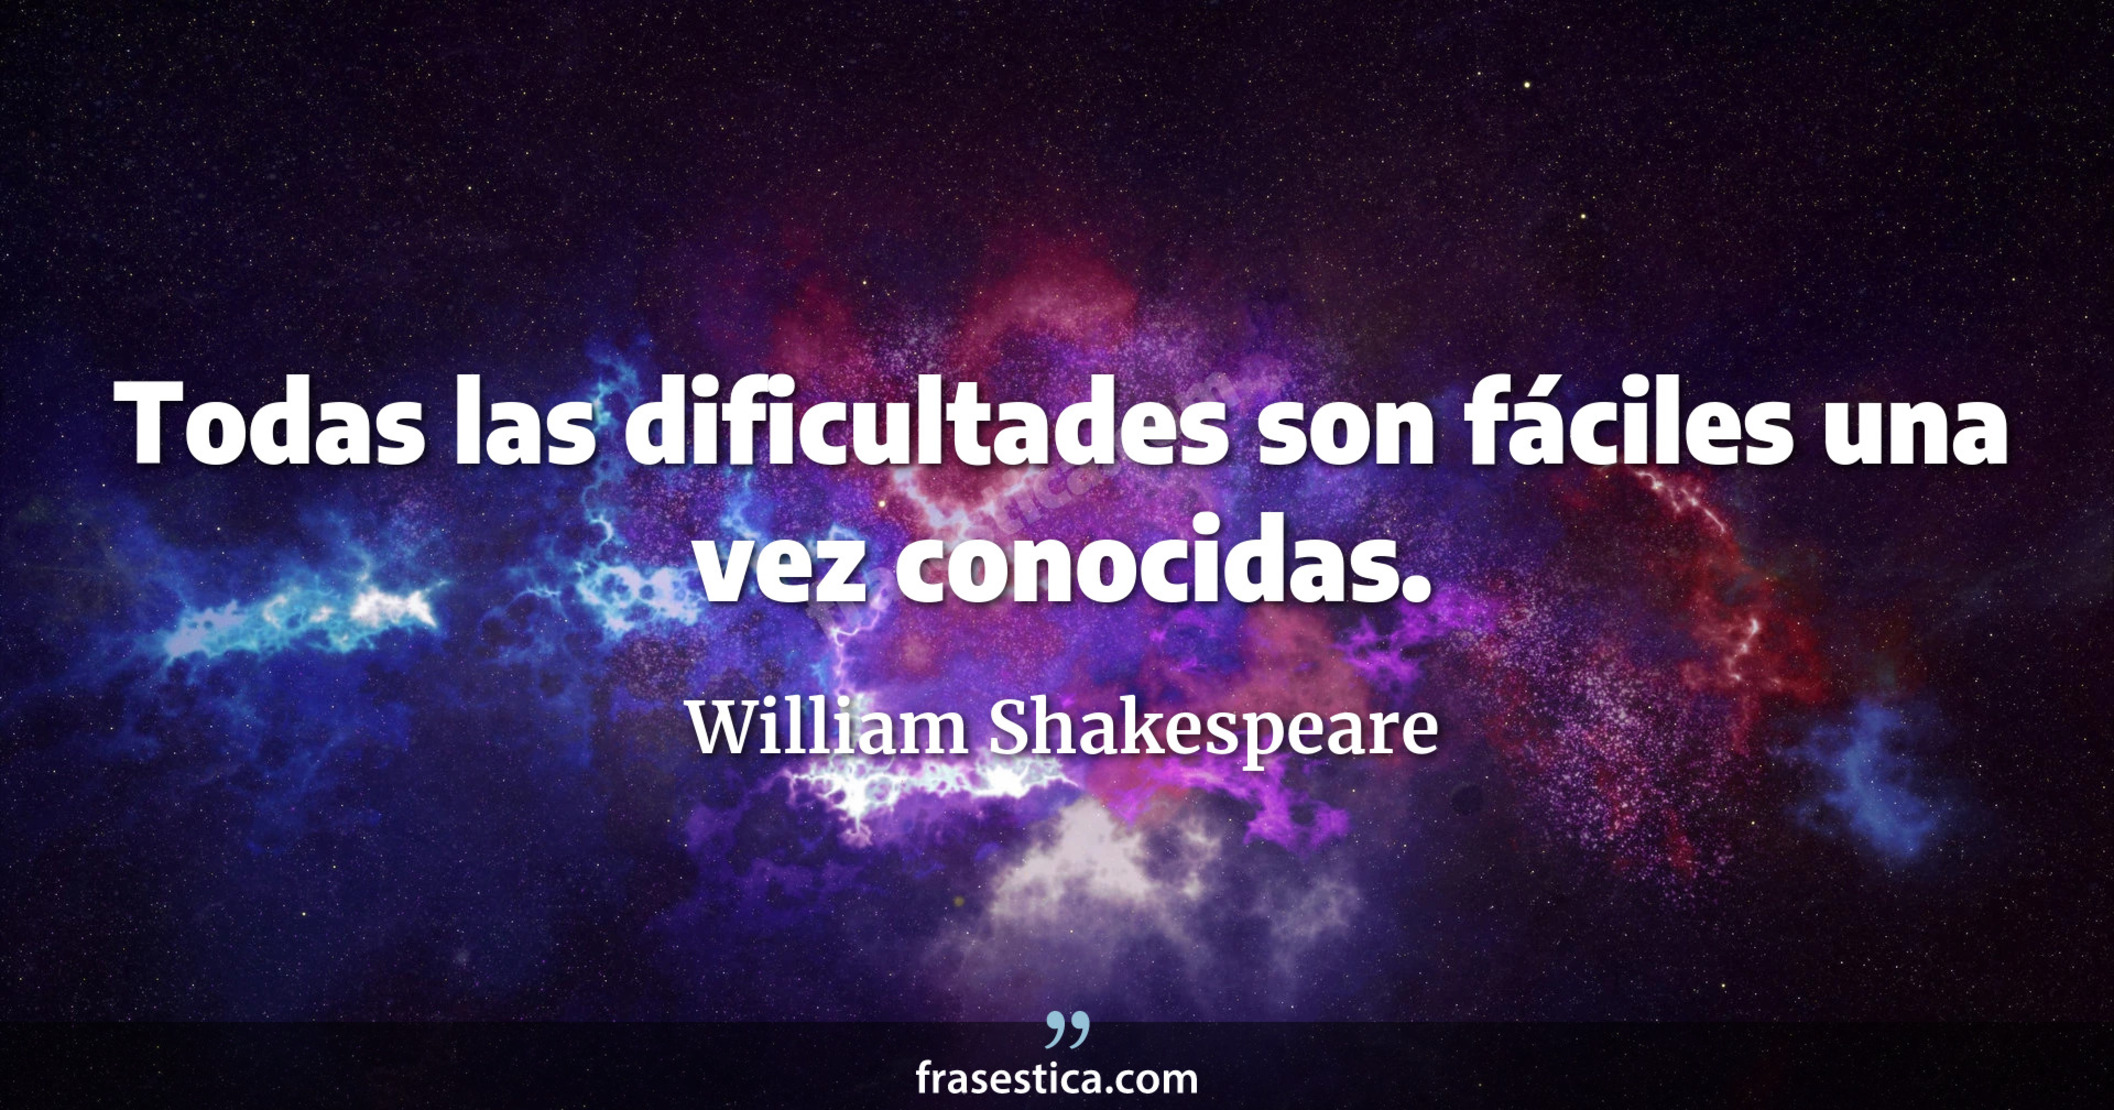 Todas las dificultades son fáciles una vez conocidas. - William Shakespeare